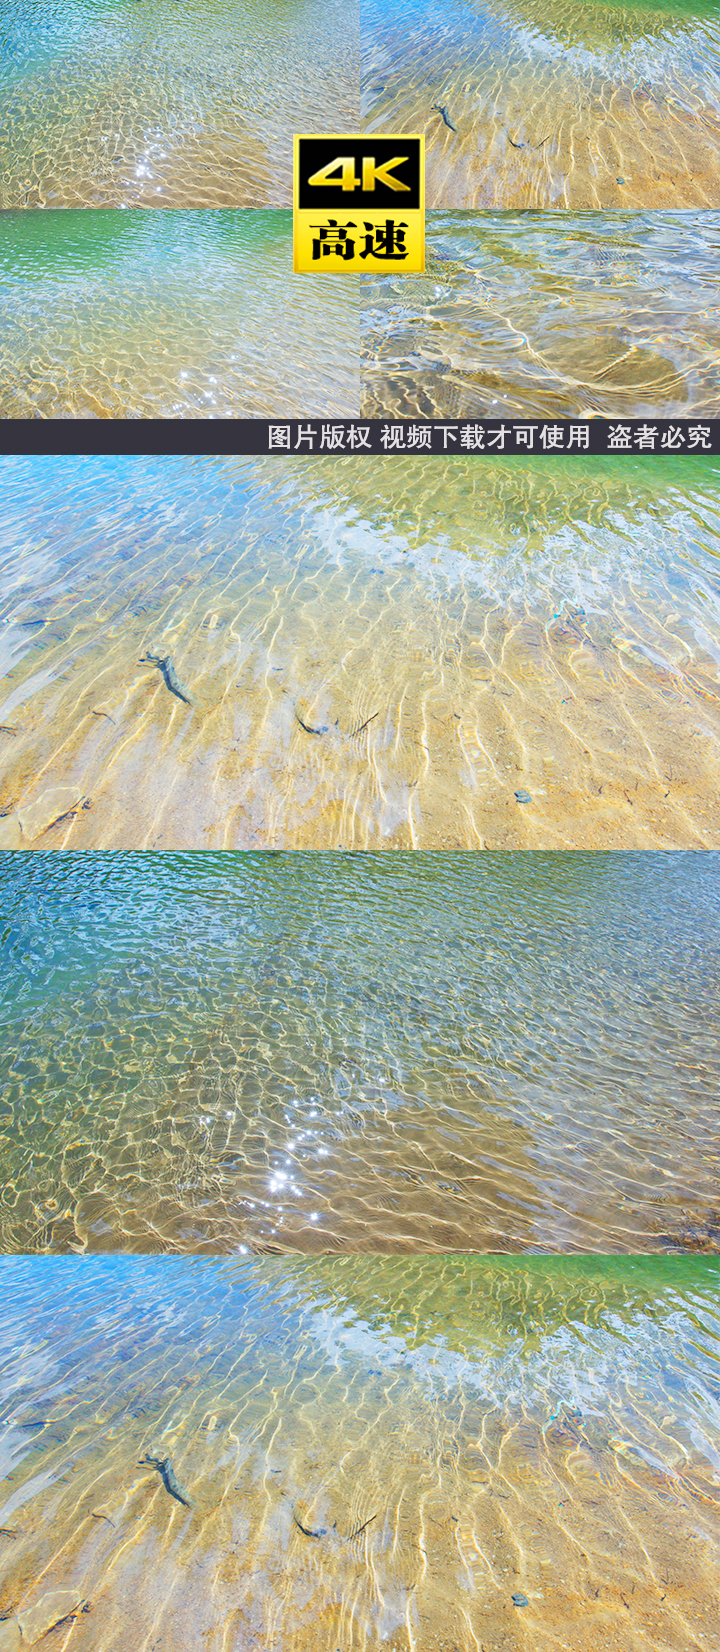 湖面波浪涟漪背景水纹贴图动态壁纸屏保湖泊